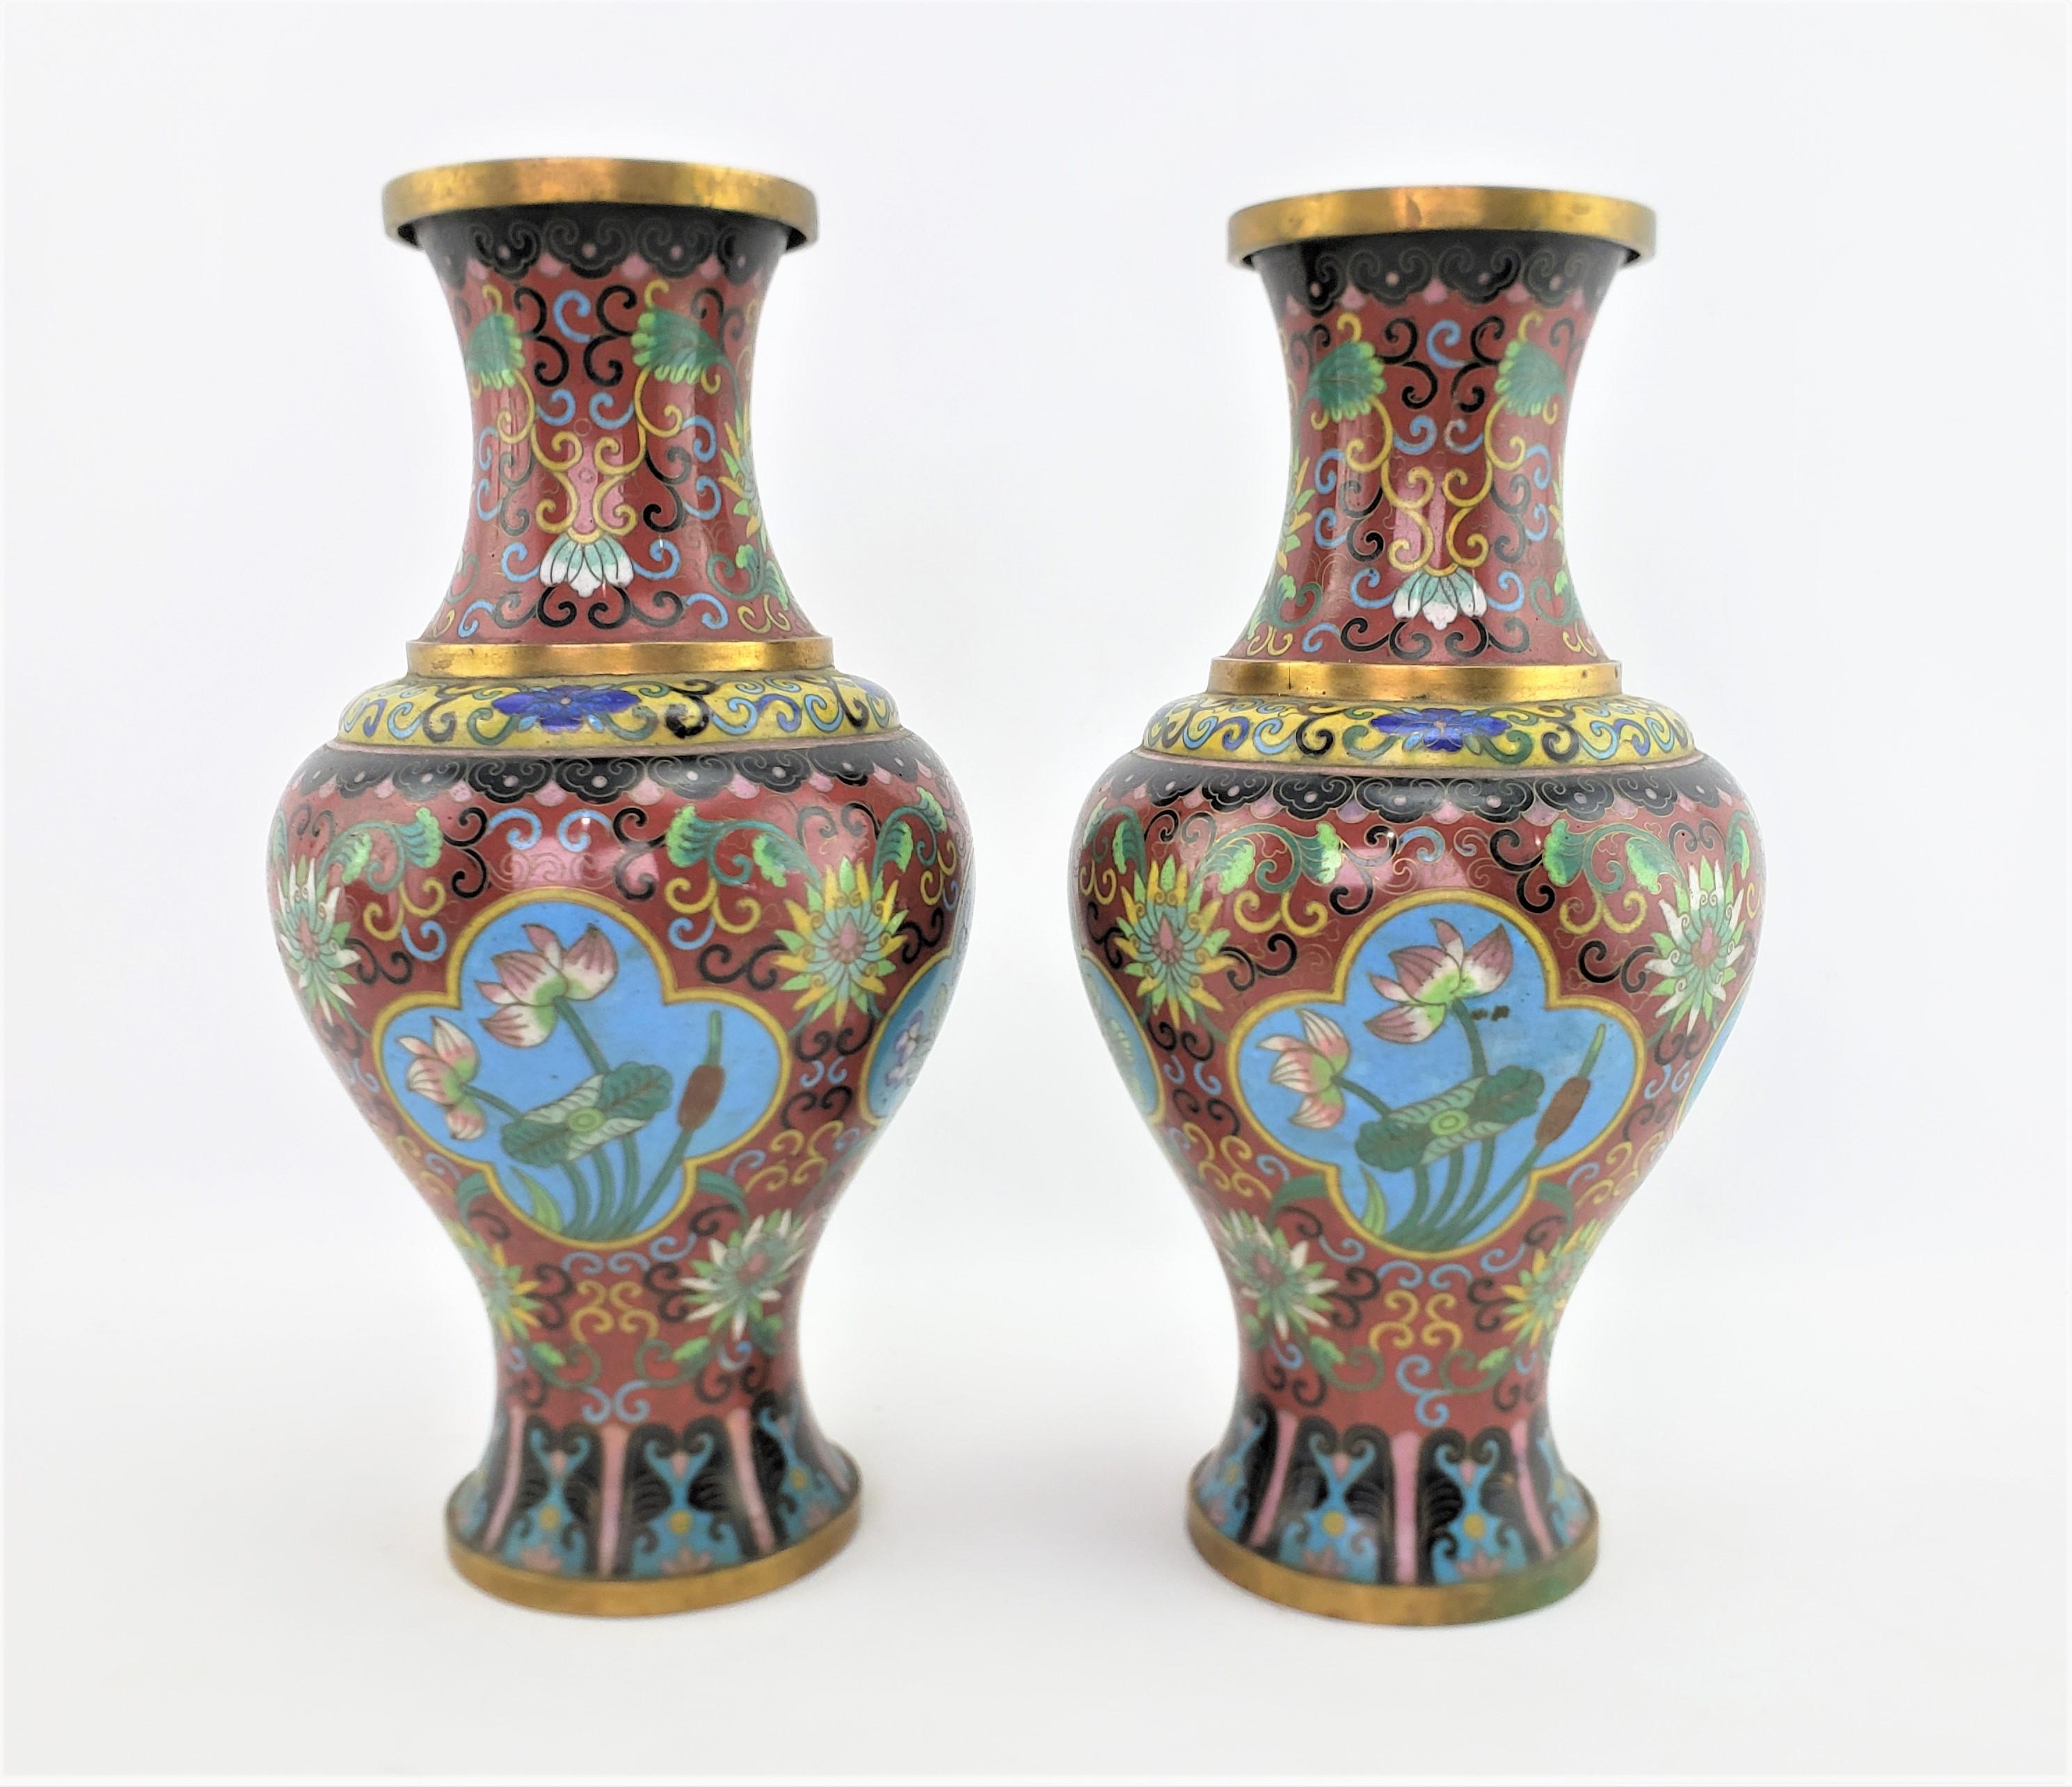 Dieses Paar antiker Cloisonné-Vasen stammt aus China aus der Zeit der frühen Republik und ist im chinesischen Exportstil gefertigt. Diese Vasen haben einen tief burgunderroten Hintergrund mit stilisierten und detaillierten Blumenpaneelen aus Nelken